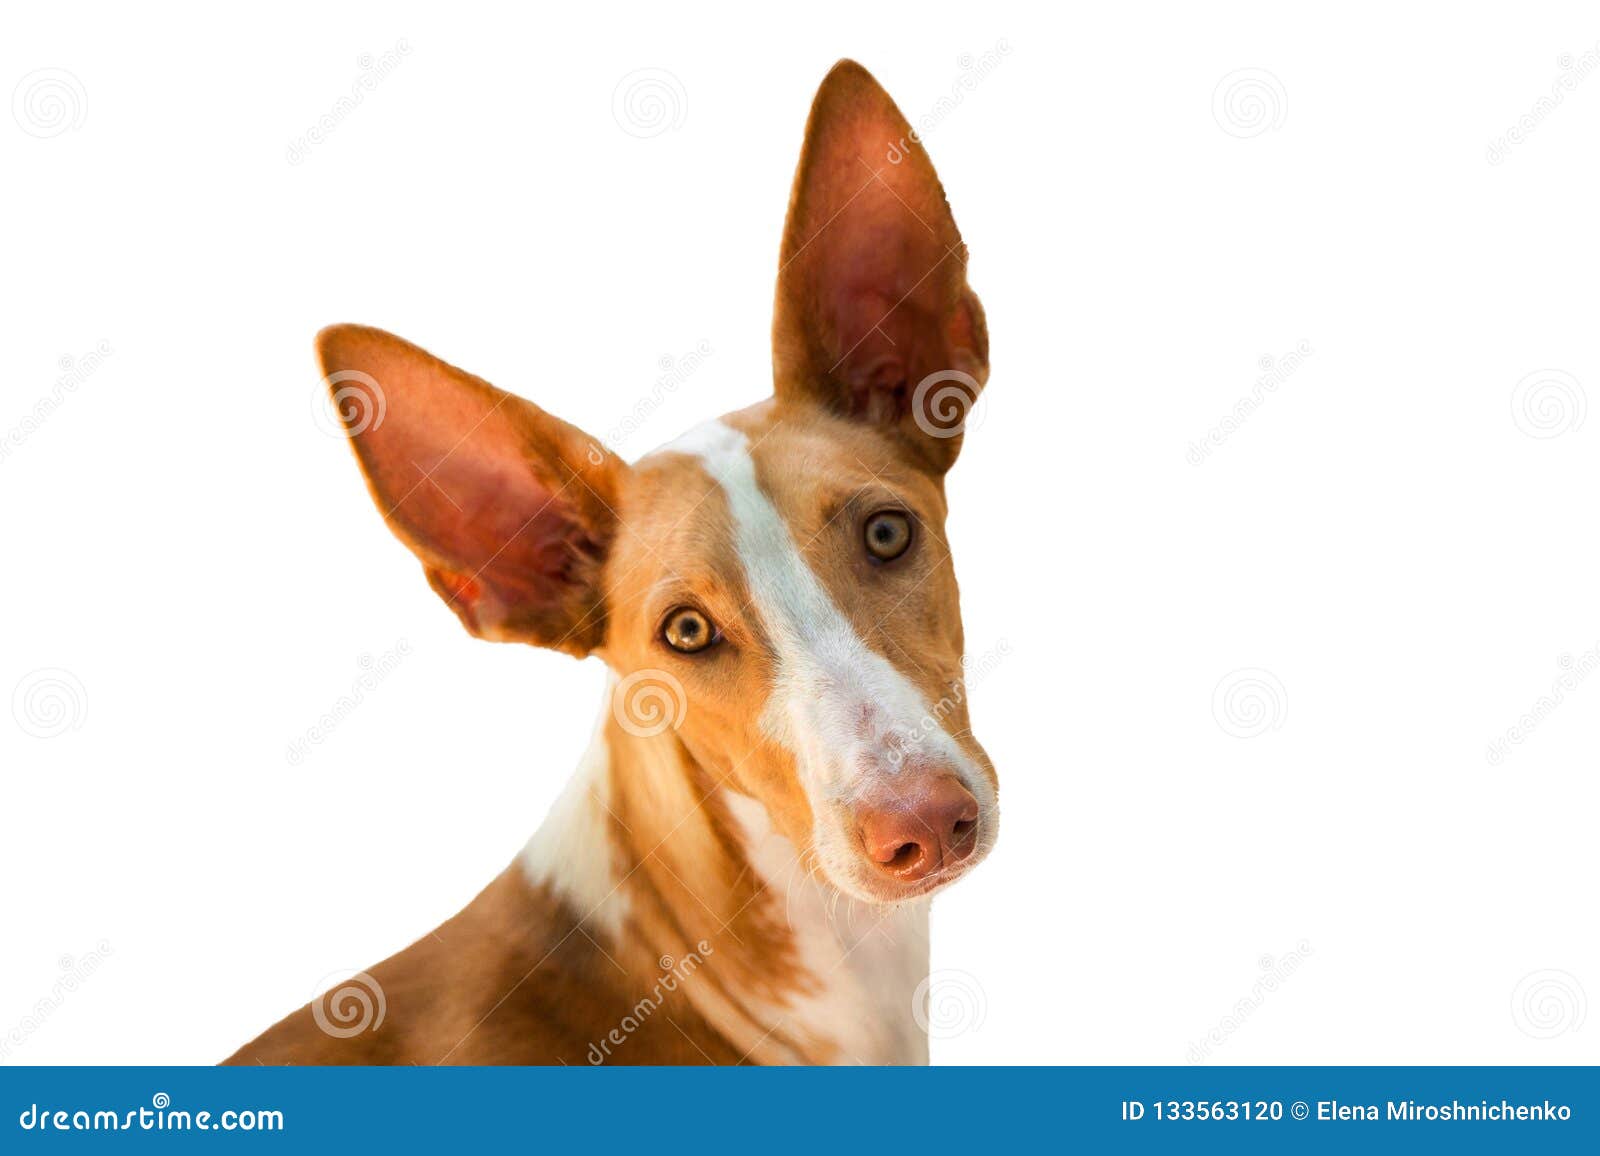 head of podenco canario portugues breed dog